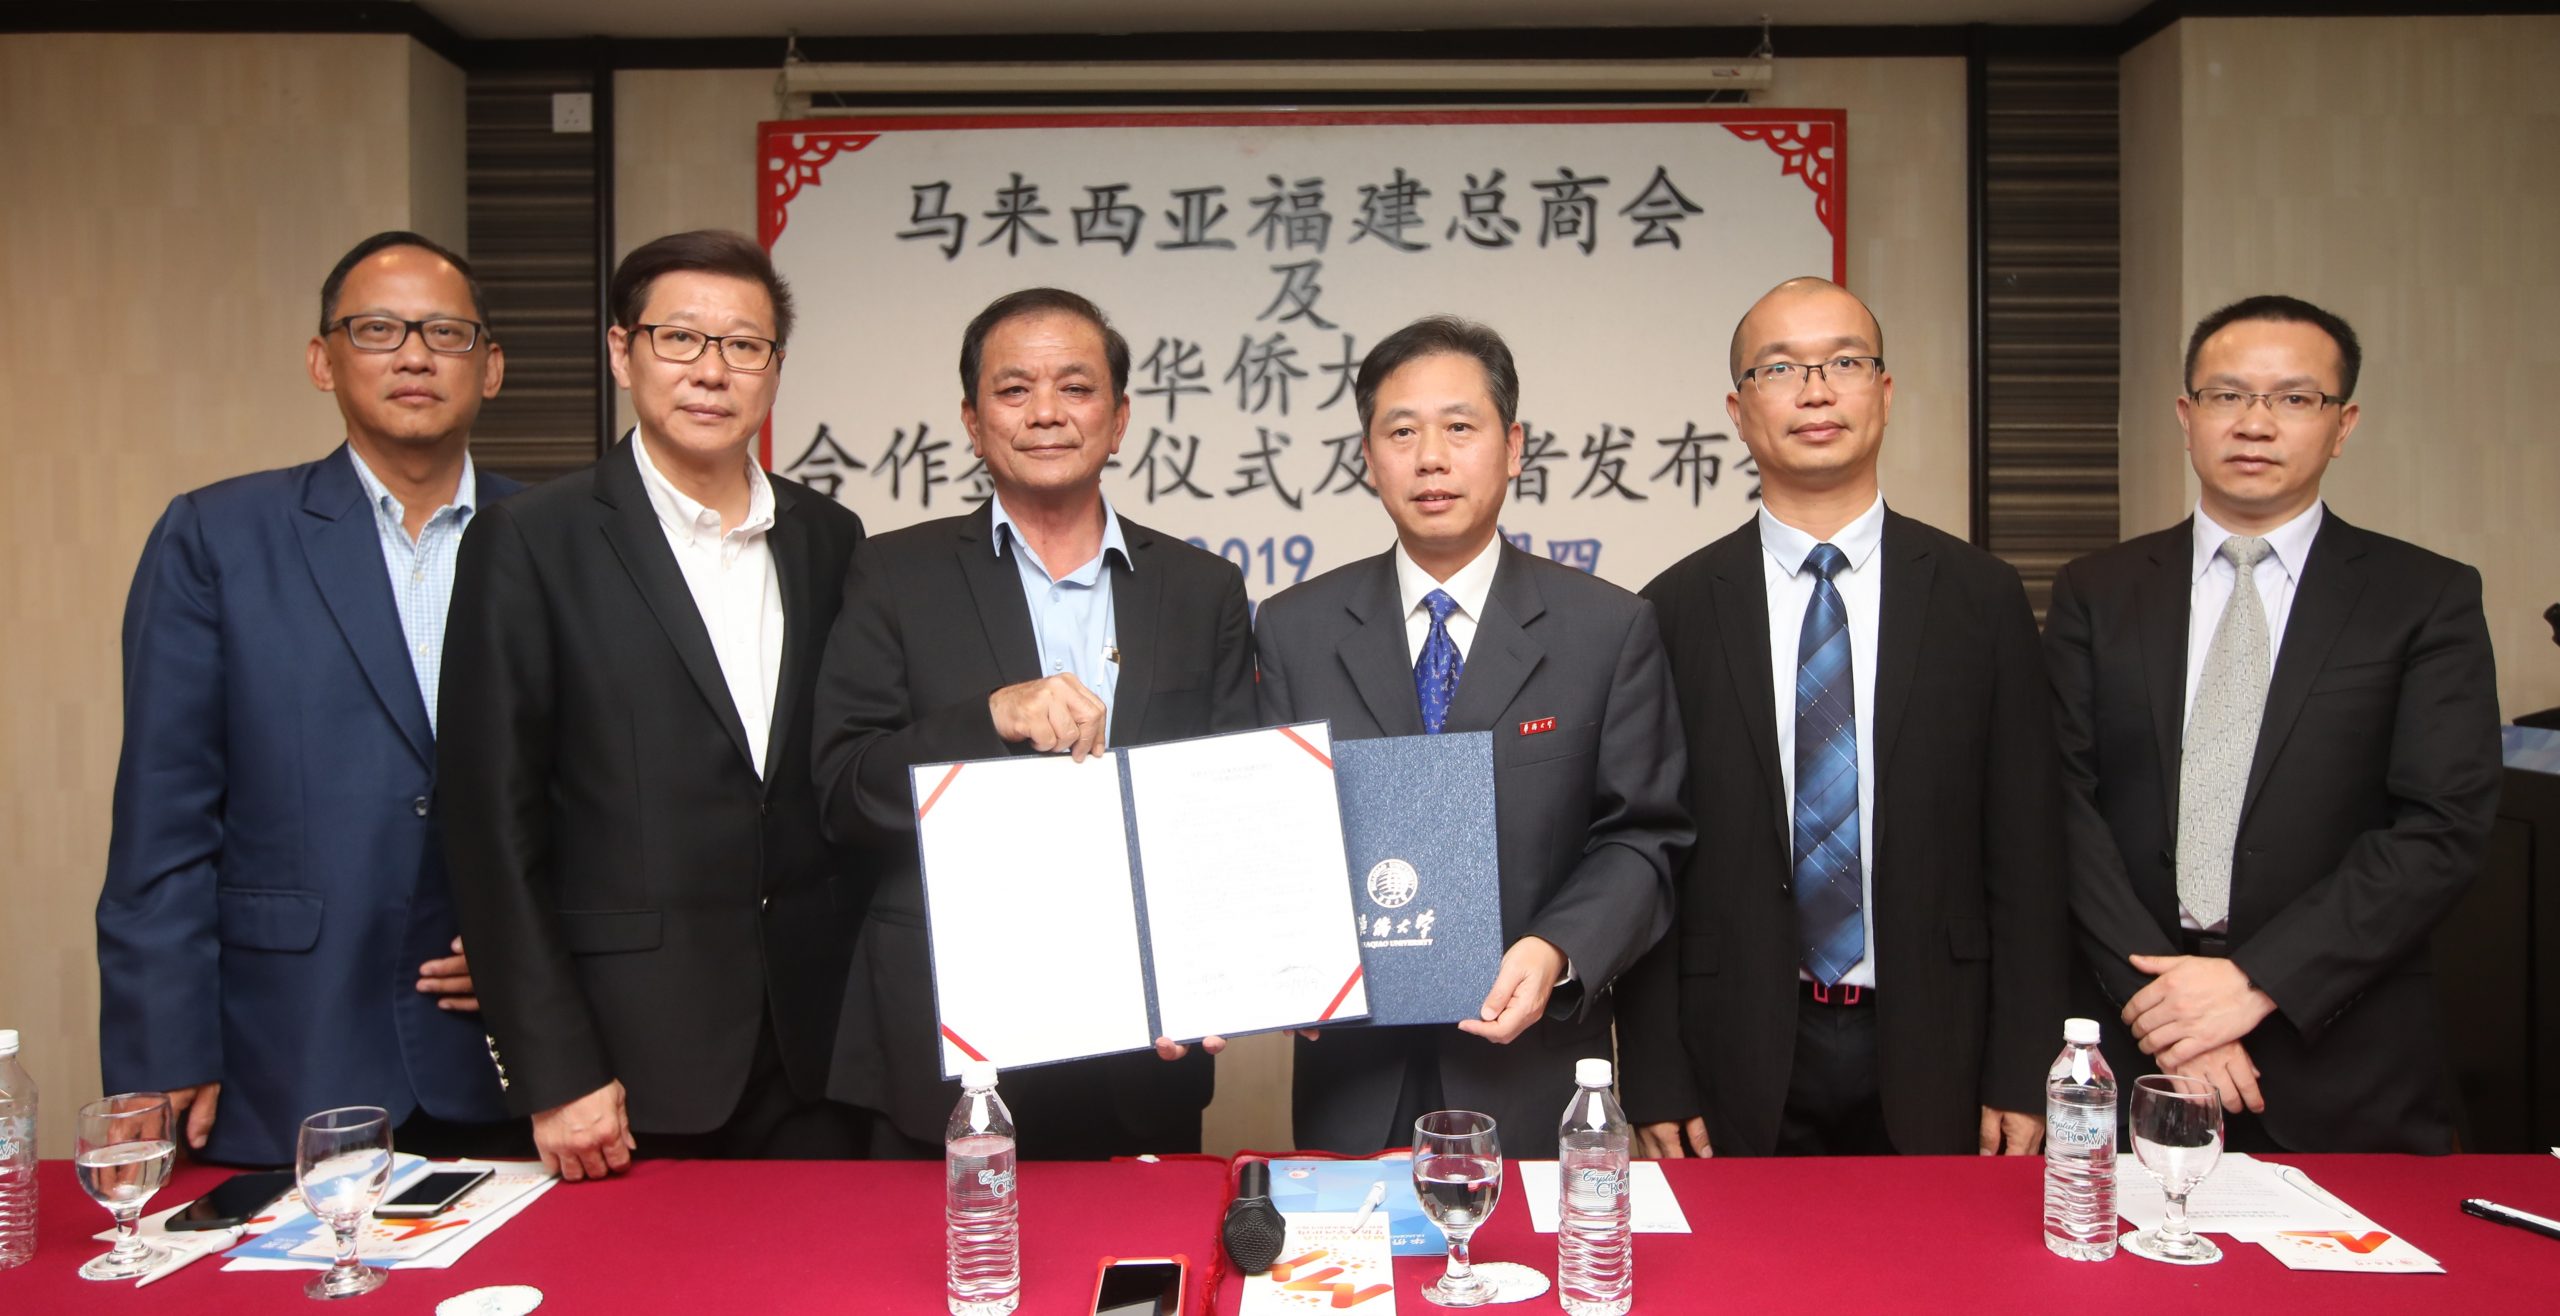 马来西亚福建总商会及华侨大学签署合作意向(4971460)-20190523183935